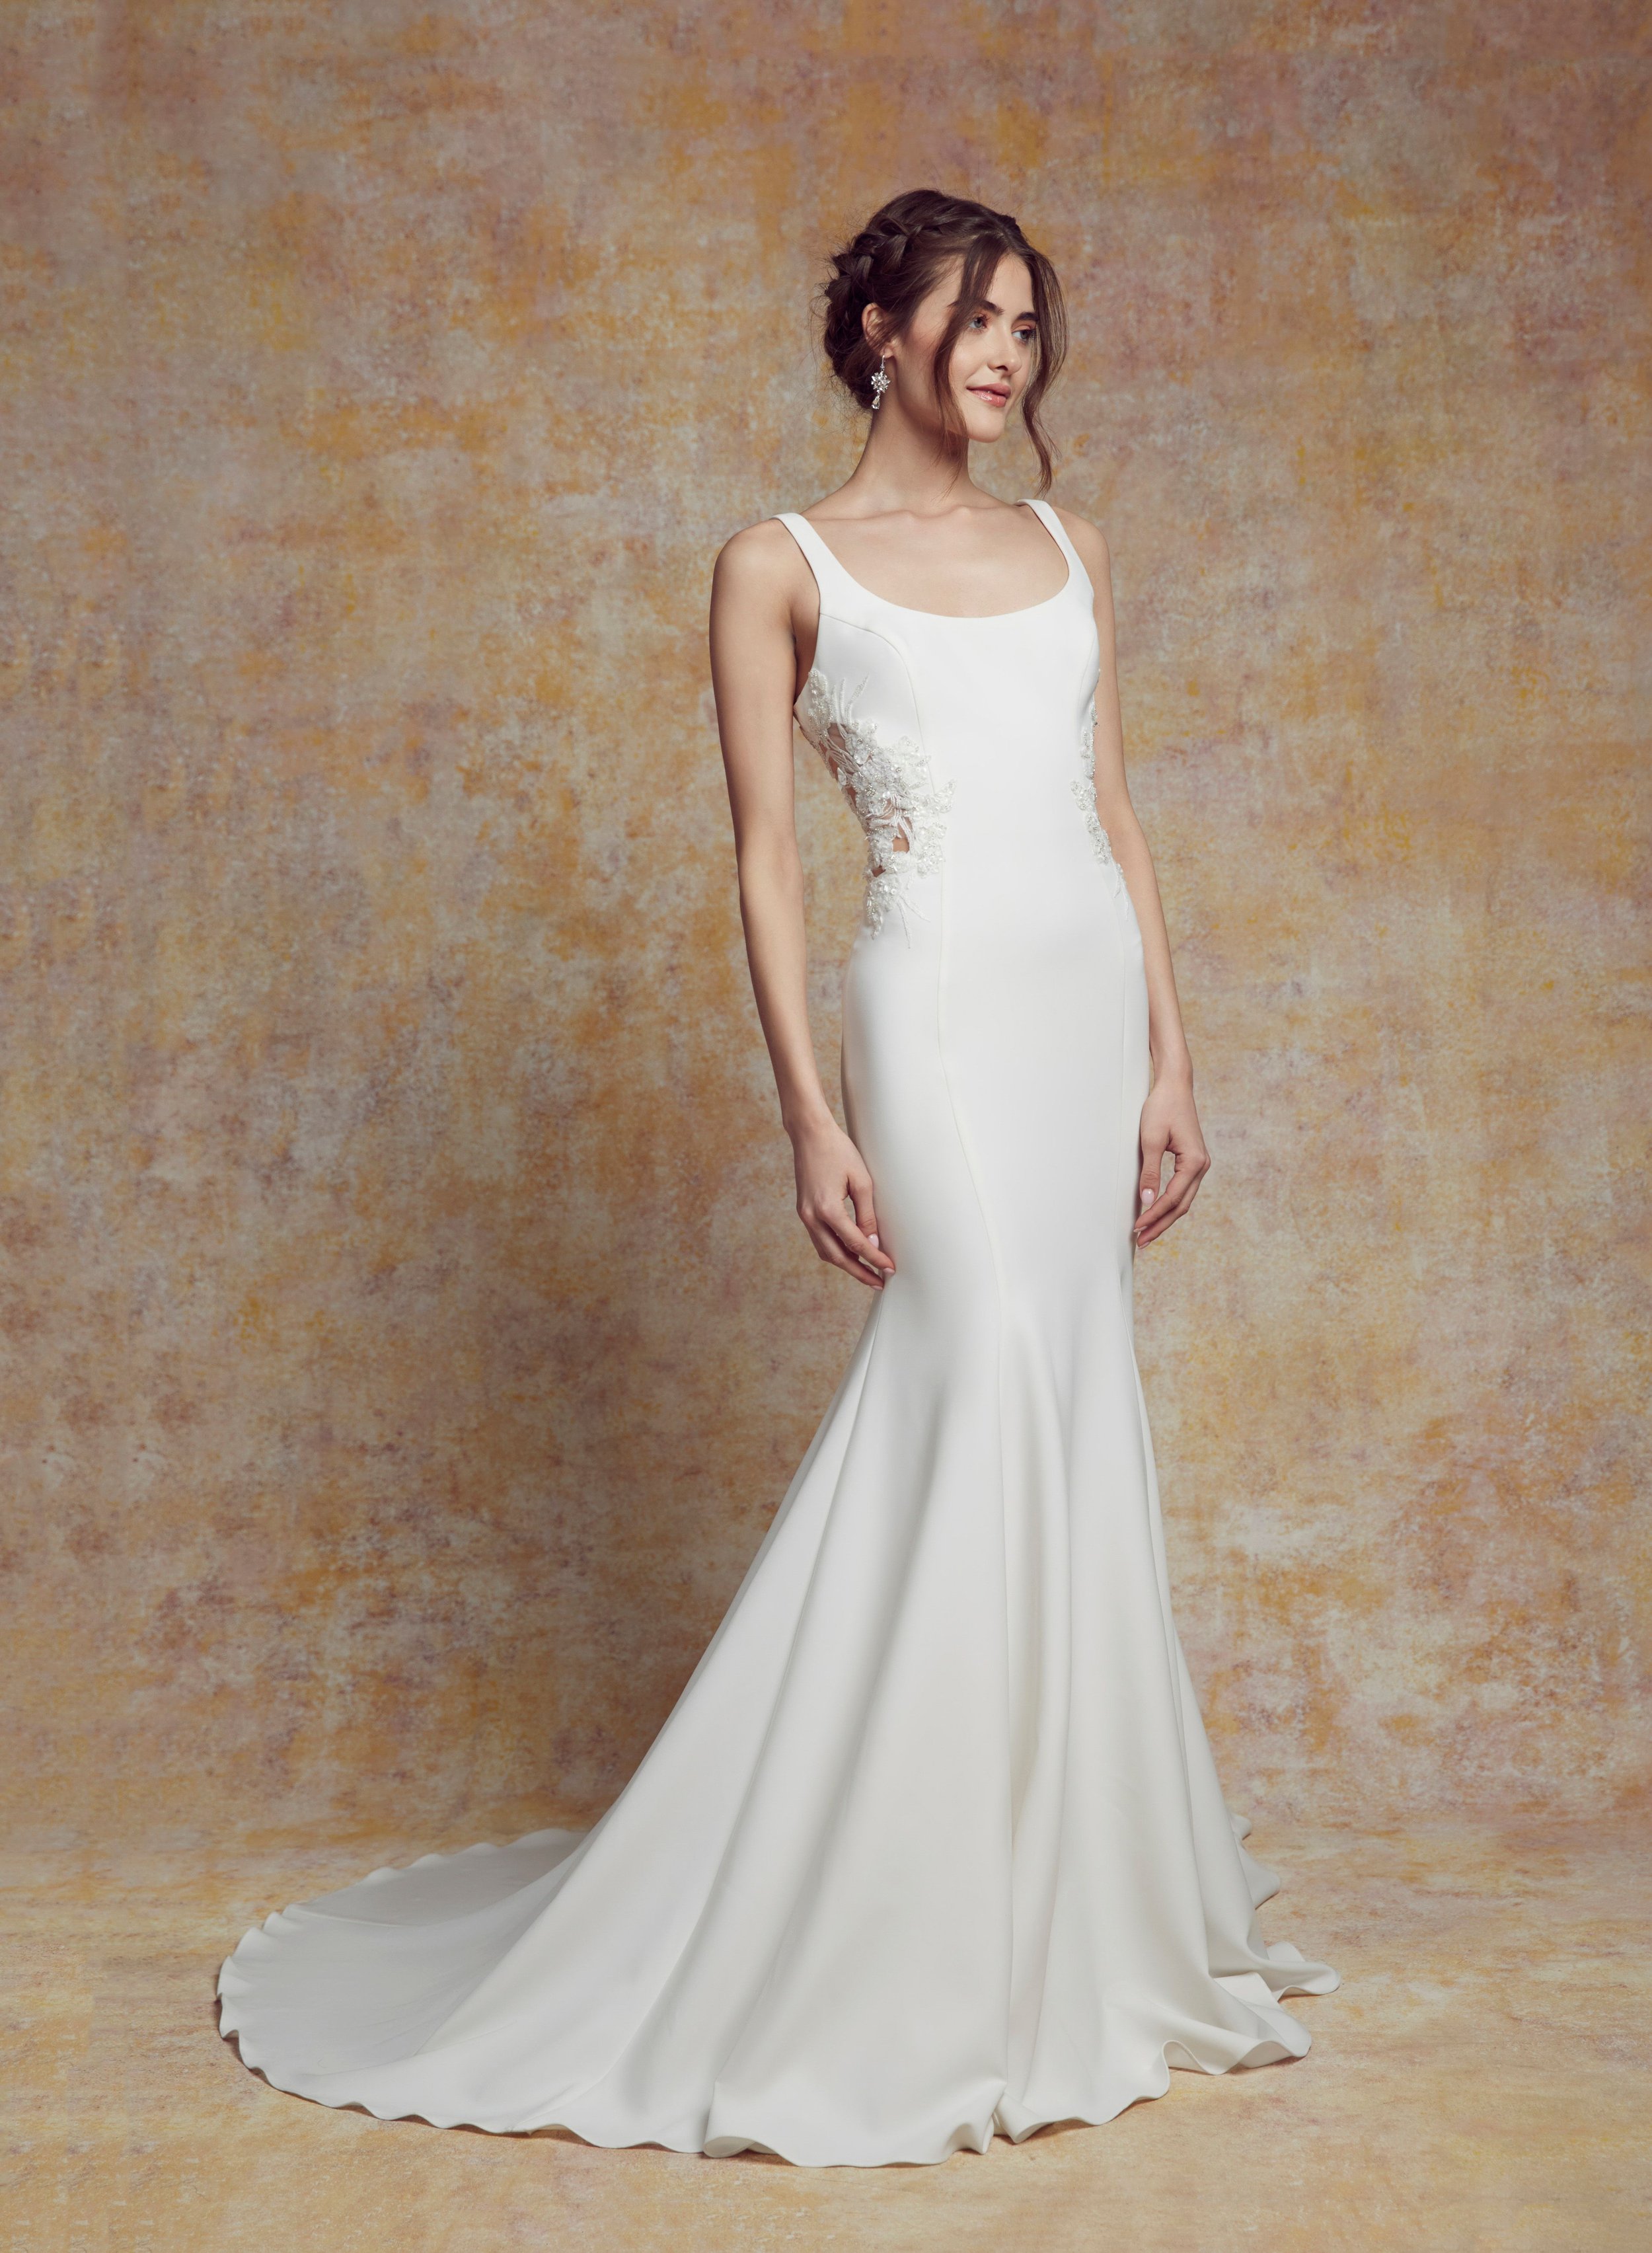 blanc-de-blanc-bridal-boutique-cleveland-dress-wedding-gown-Janet..jpeg